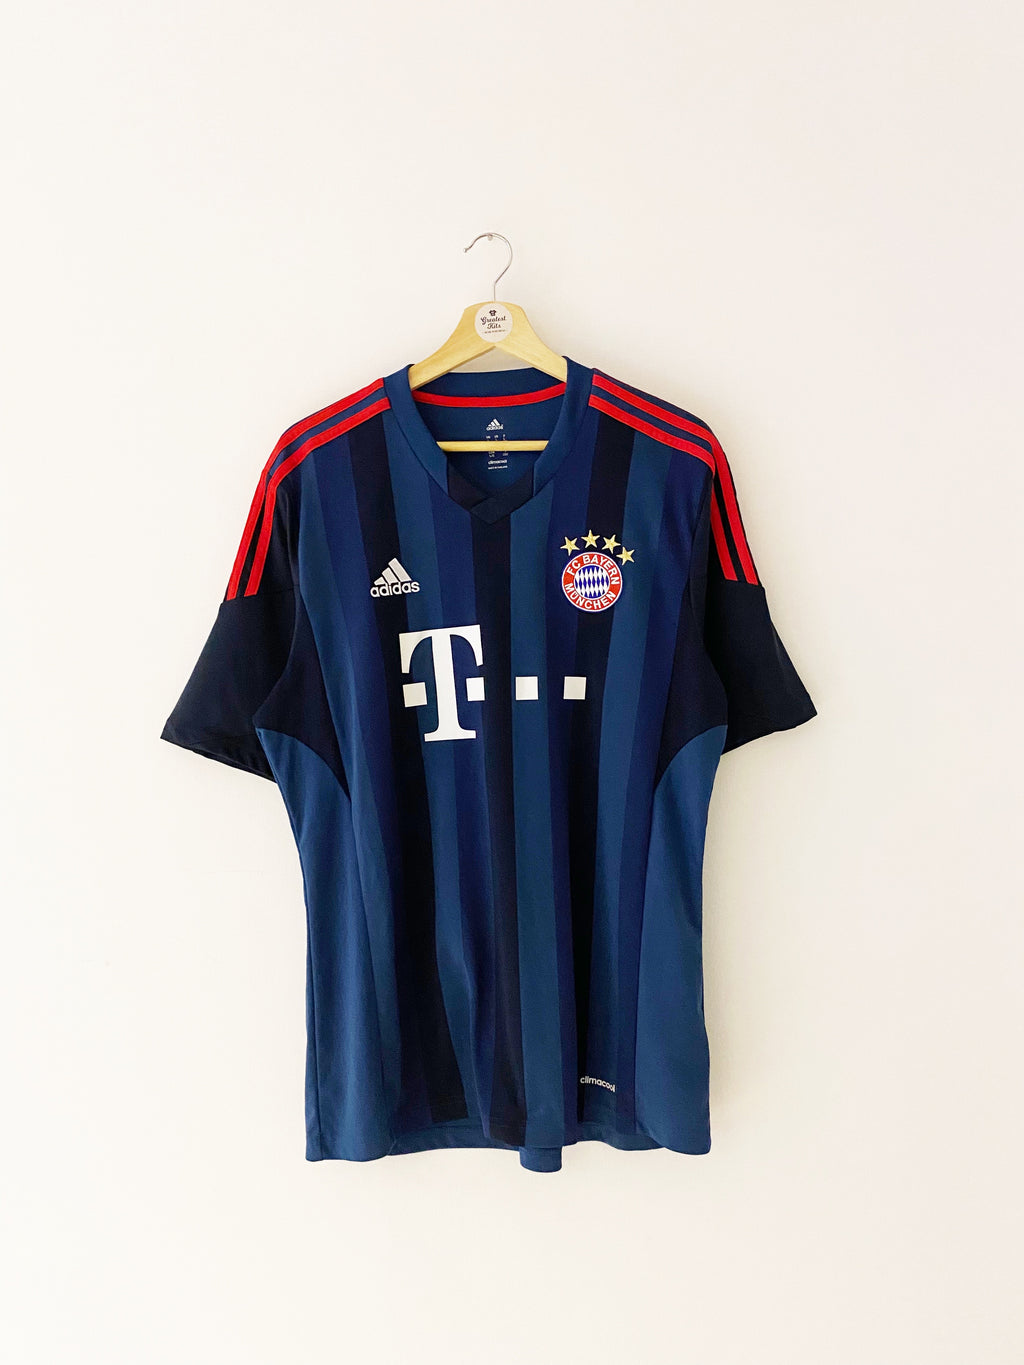 Maillot Troisième du Bayern Munich 2013/14 (L) 9/10